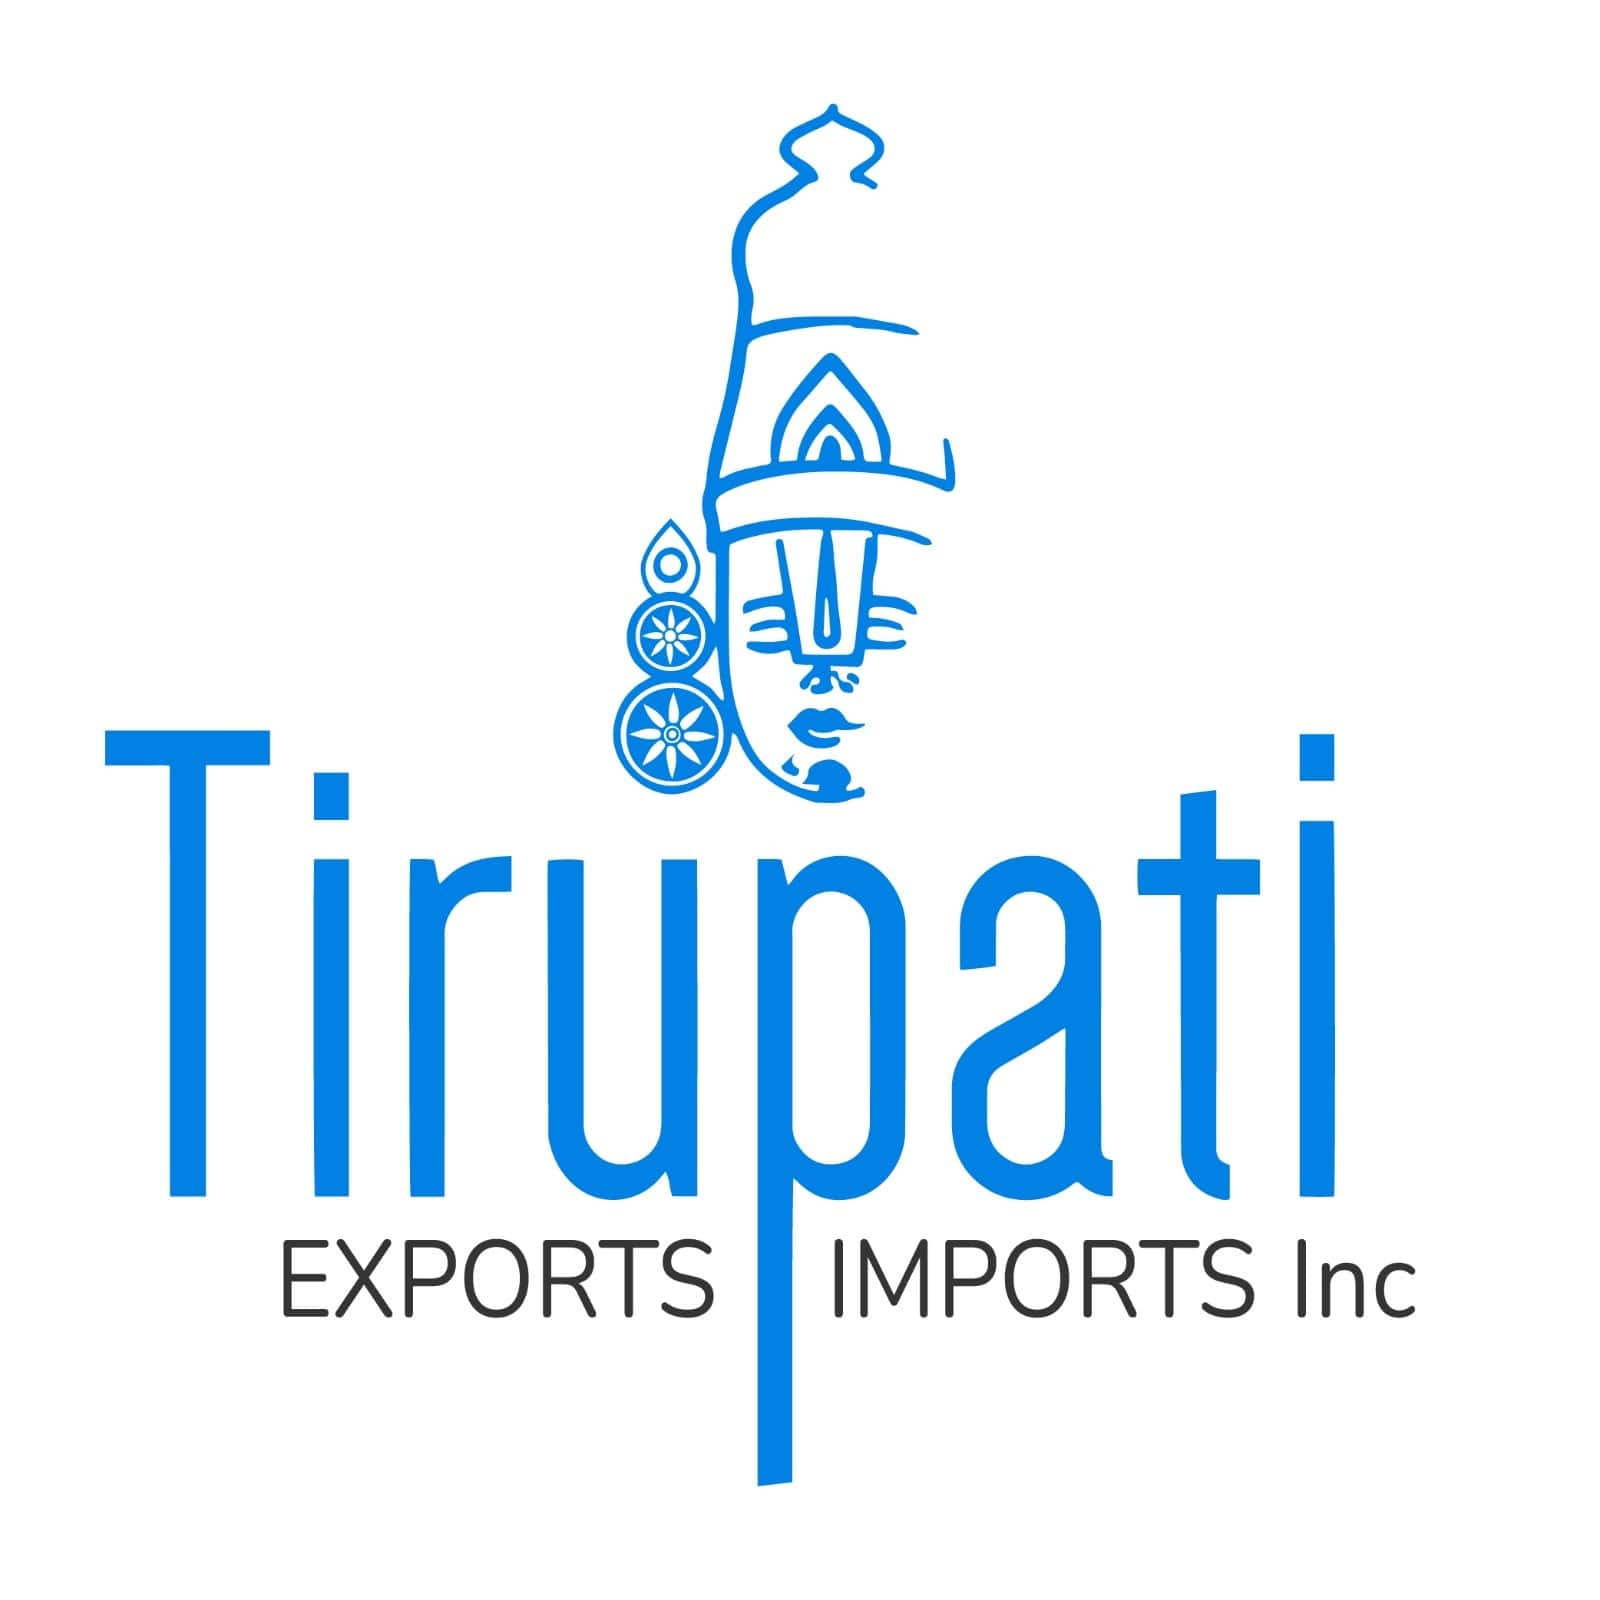 TIRUPATI EXPORTS AND IMPORTS